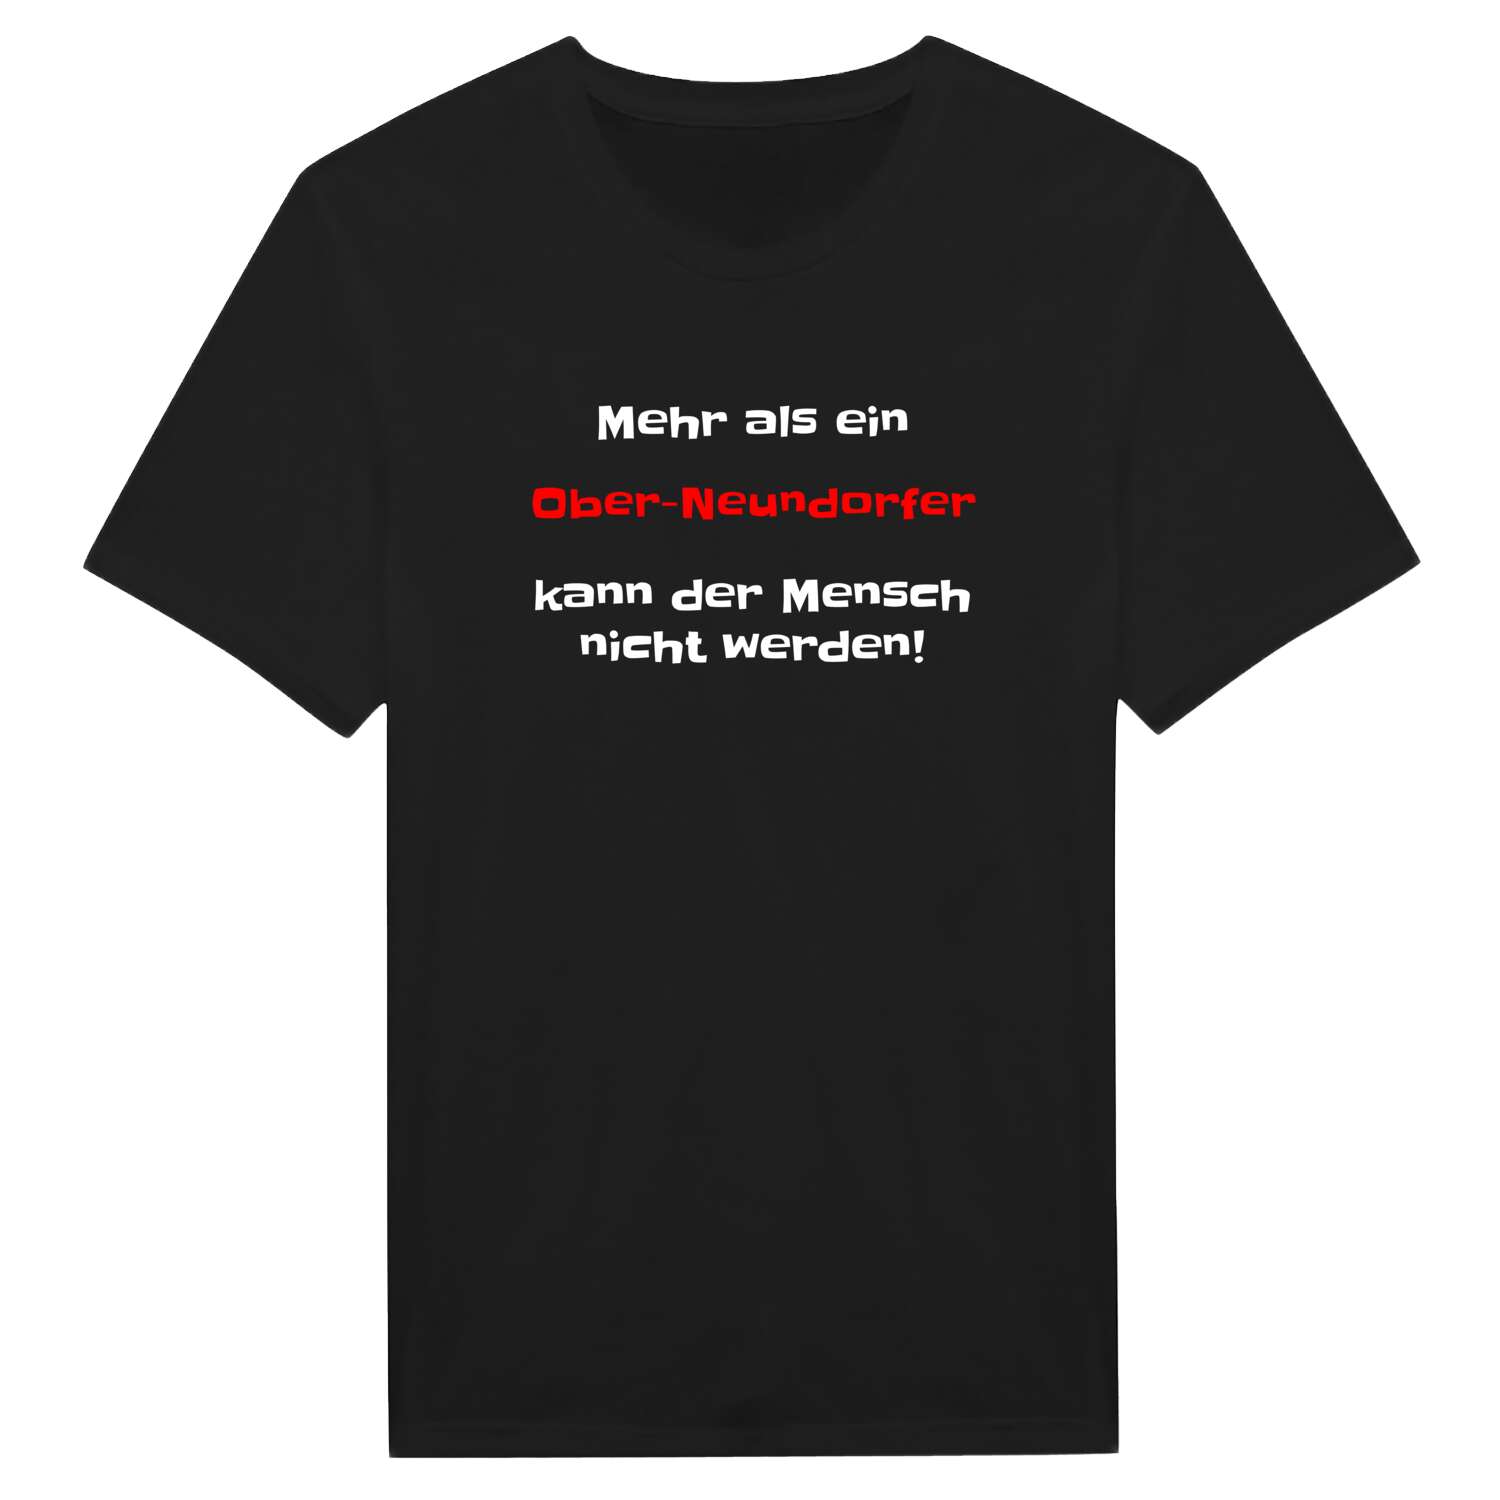 Ober-Neundorf T-Shirt »Mehr als ein«